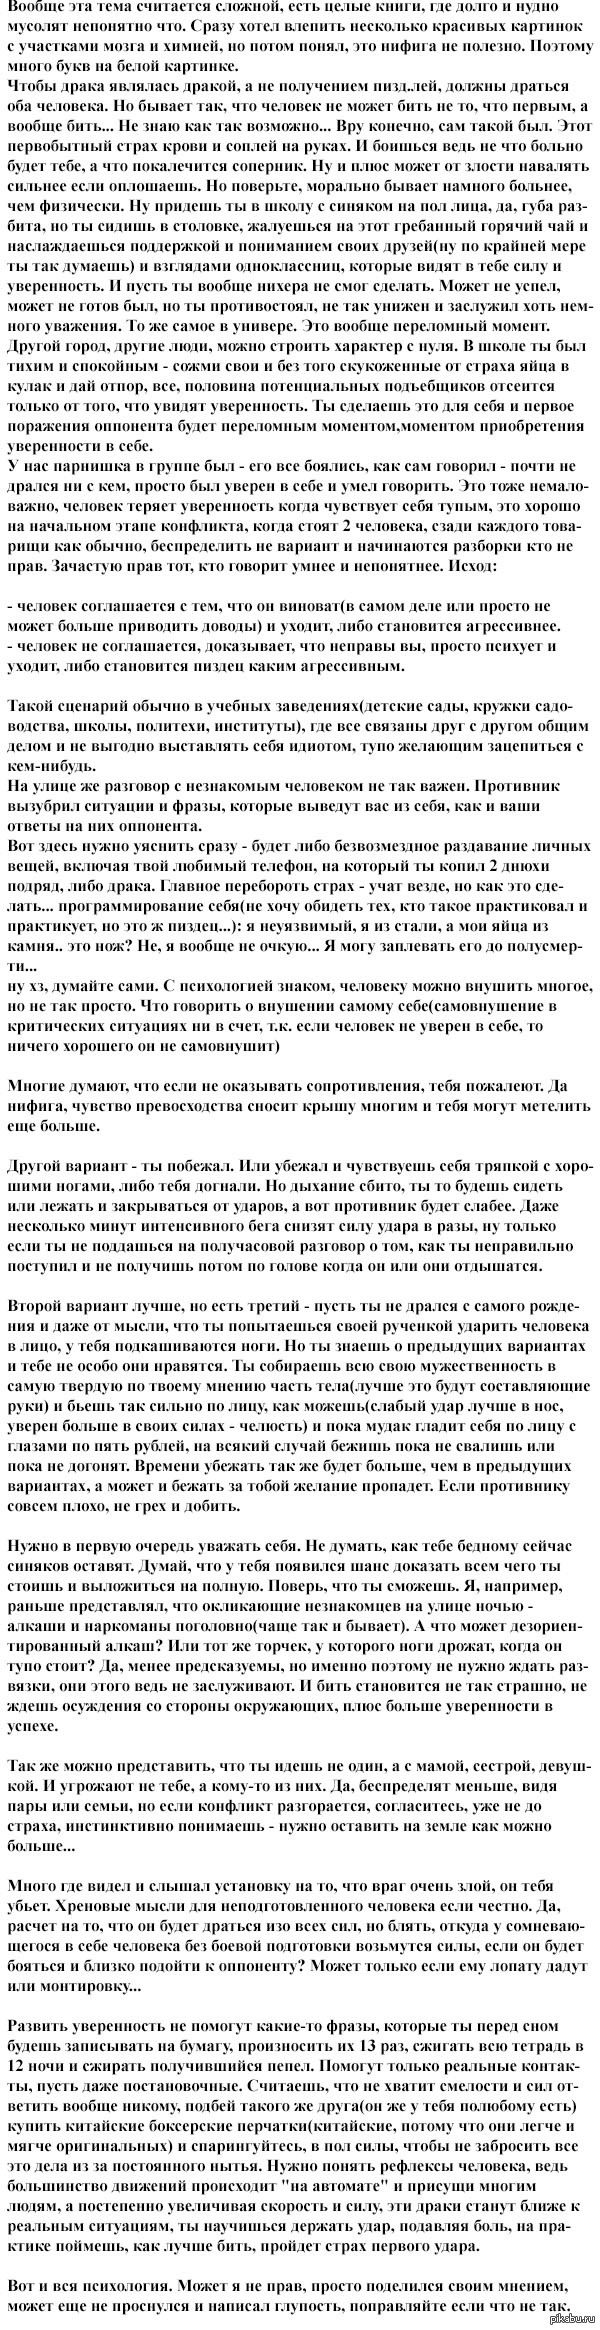  ,  .          <a href="http://pikabu.ru/story/samooborona_1662193">http://pikabu.ru/story/_1662193</a>